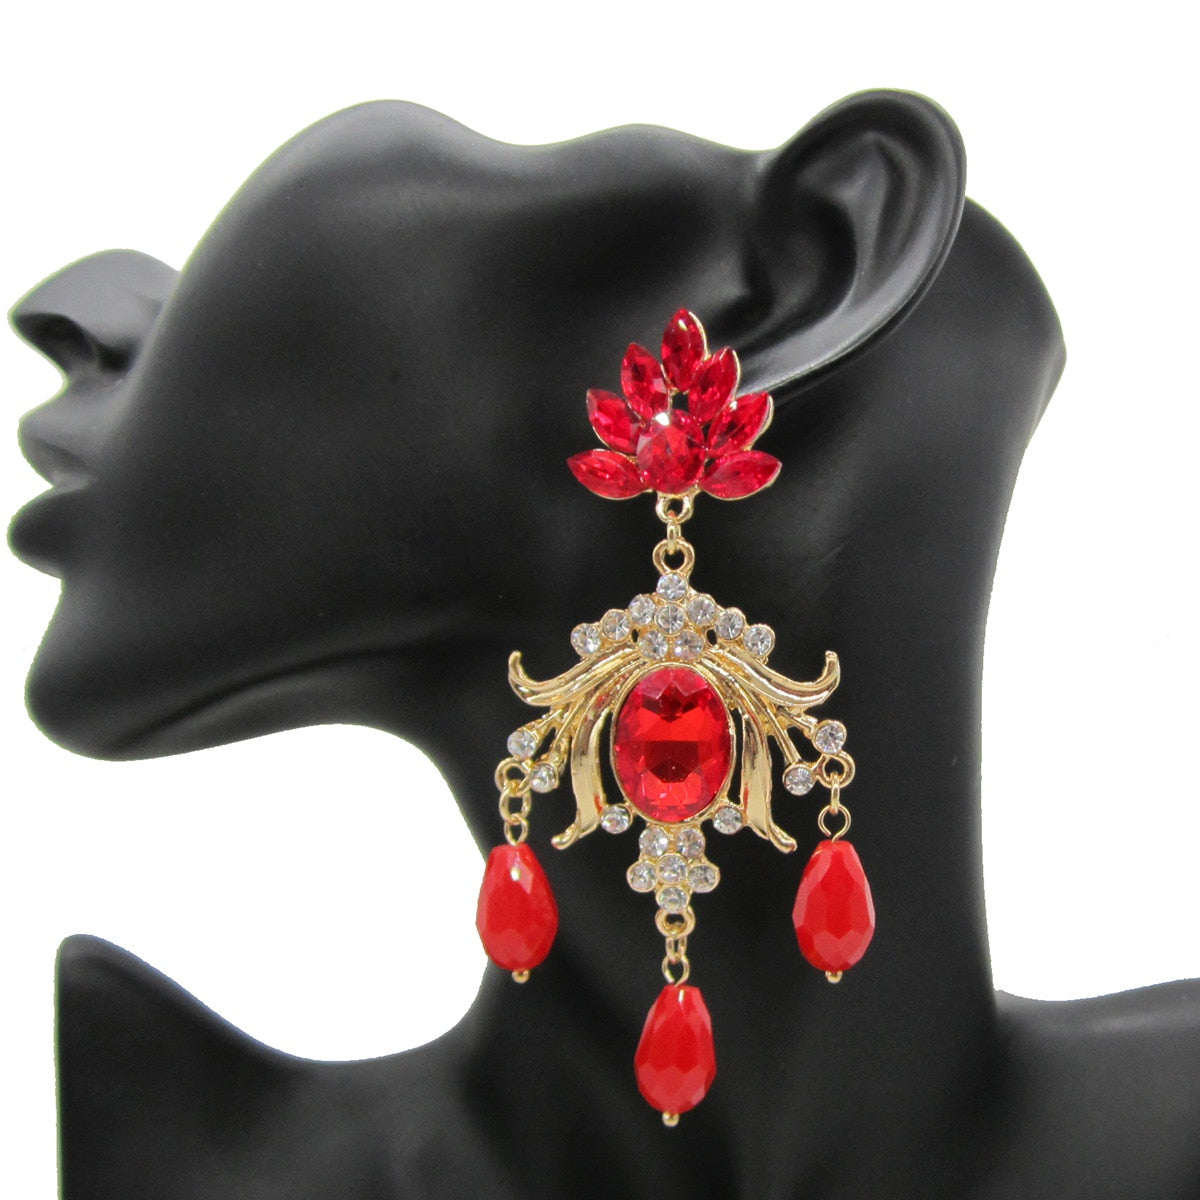 New Shiny Rhinestone Drop Earrings For Women Long Crystal Water-Drop Tassle Dangle Earring